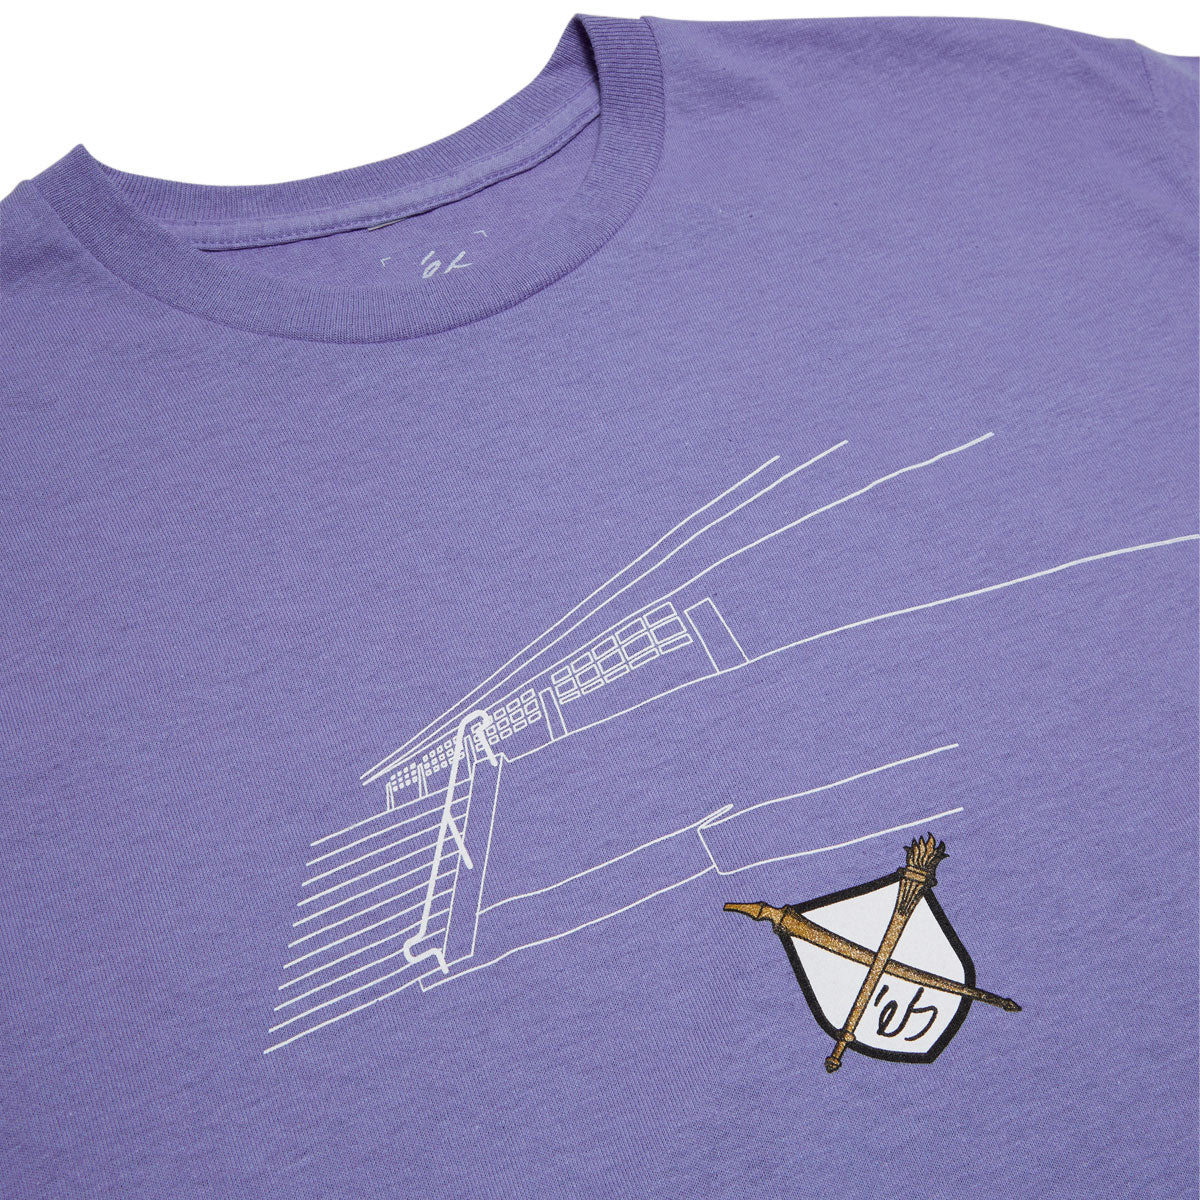 eS Carlsbad T-Shirt - Violet image 2